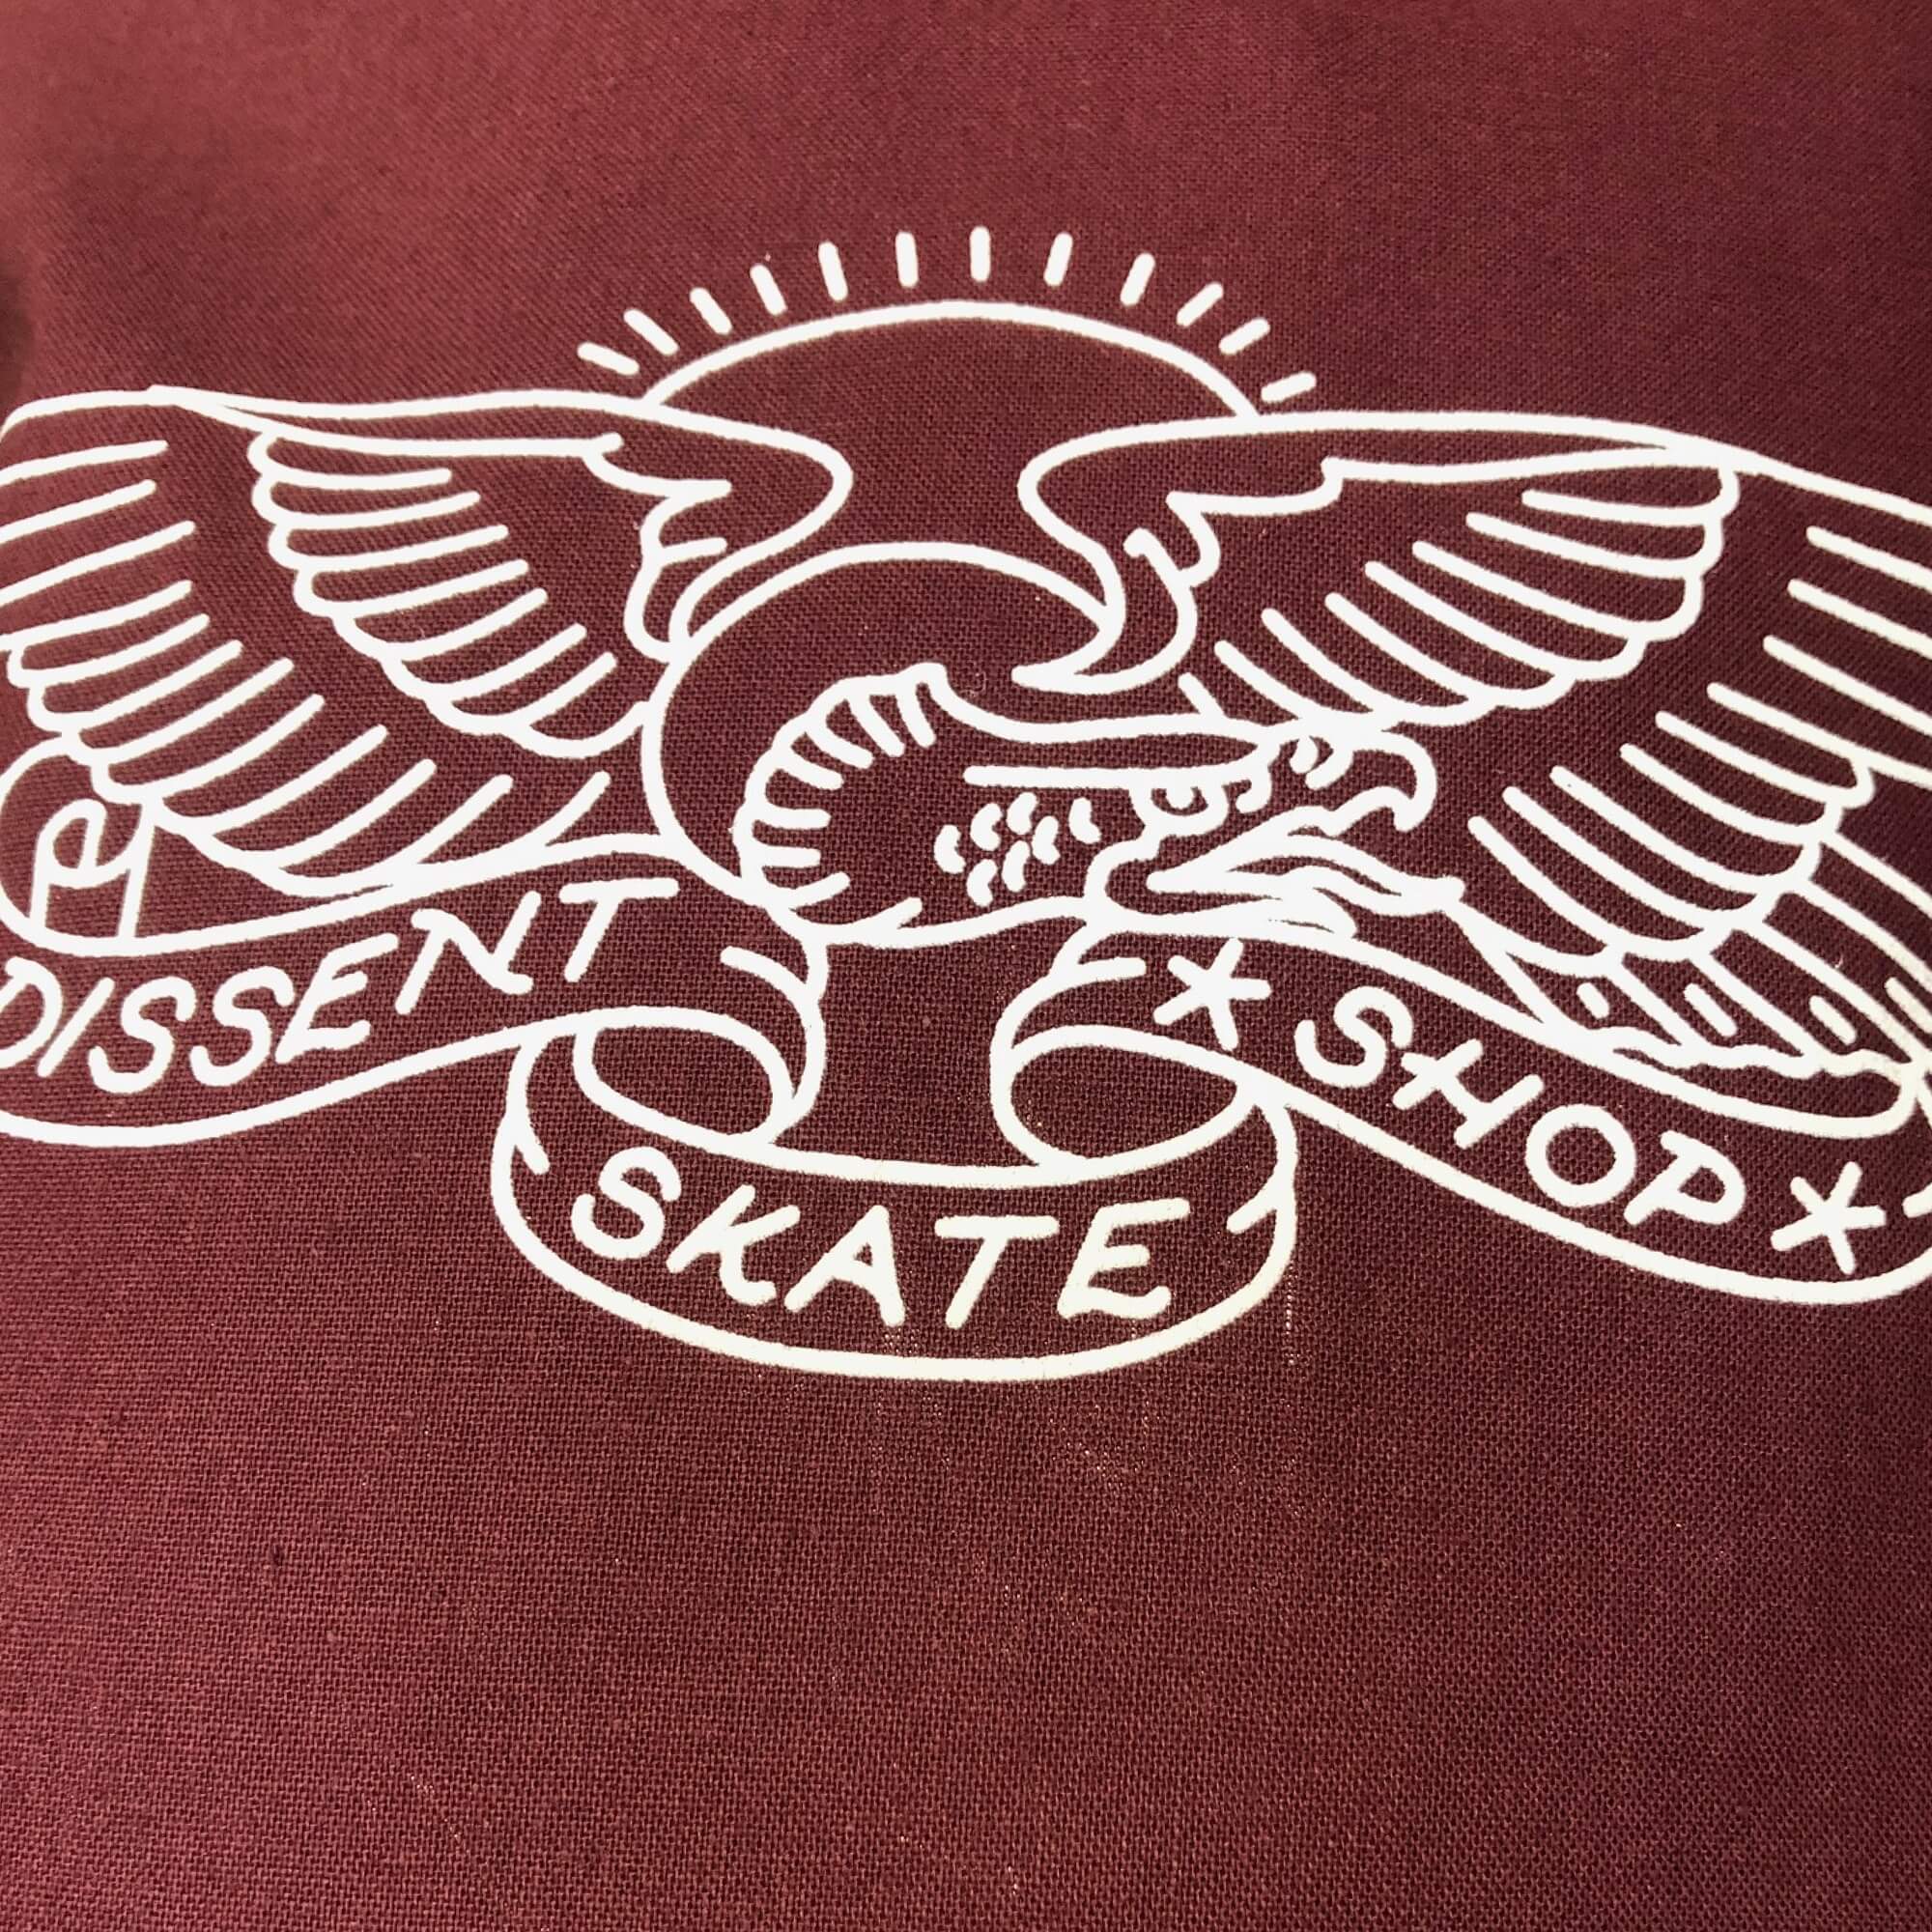 Dissent Skateboarding Eagle Logo Tote Bag For Life Burgundy